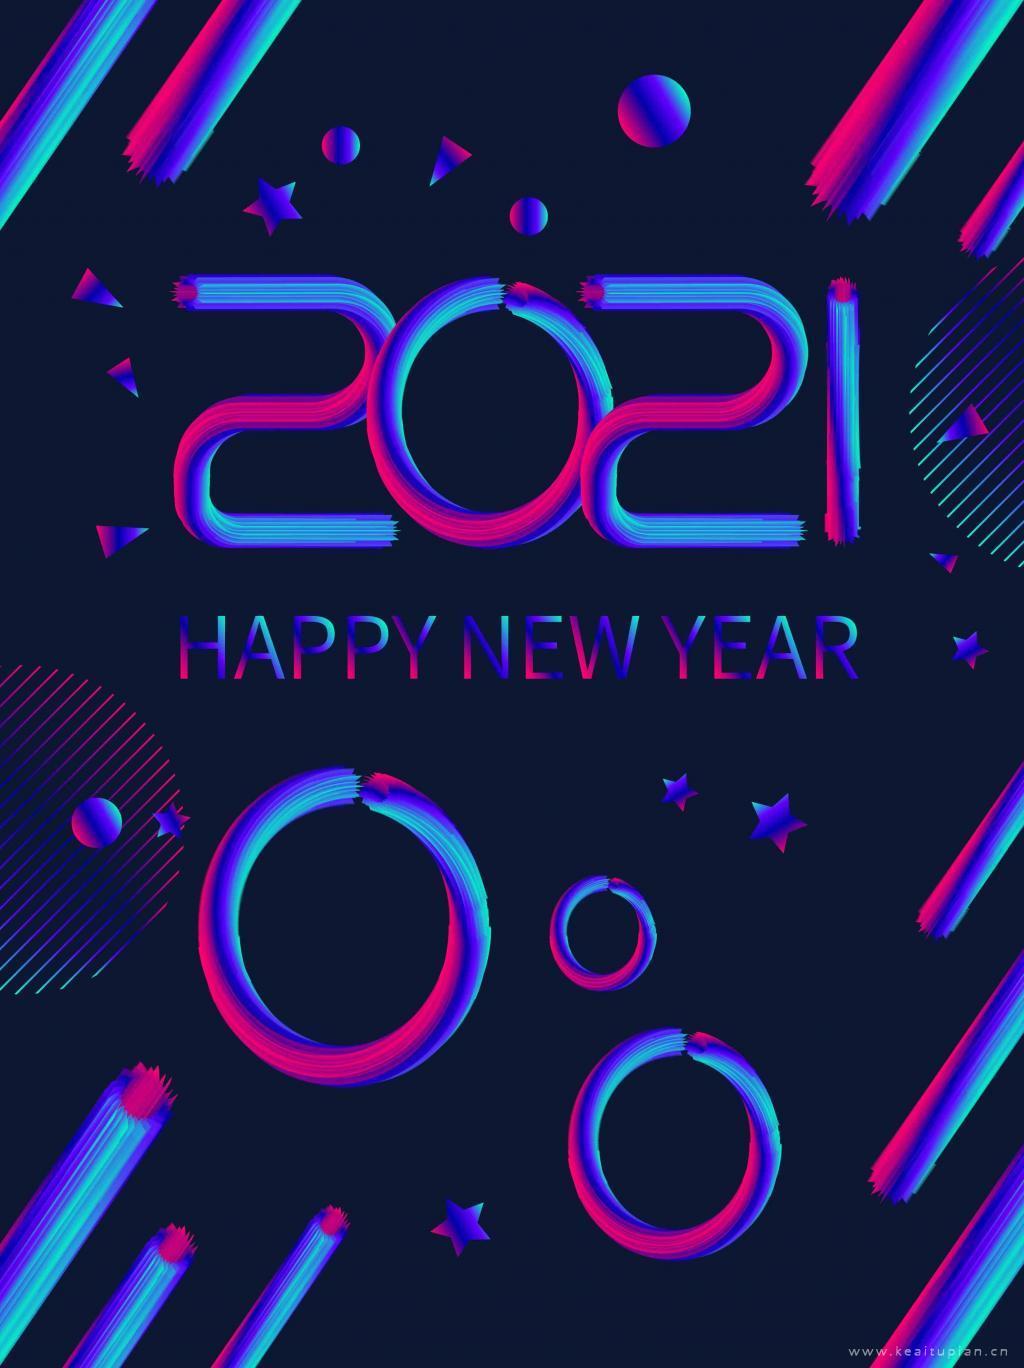 2021炫酷庆祝新年文字壁纸图高清手机壁纸